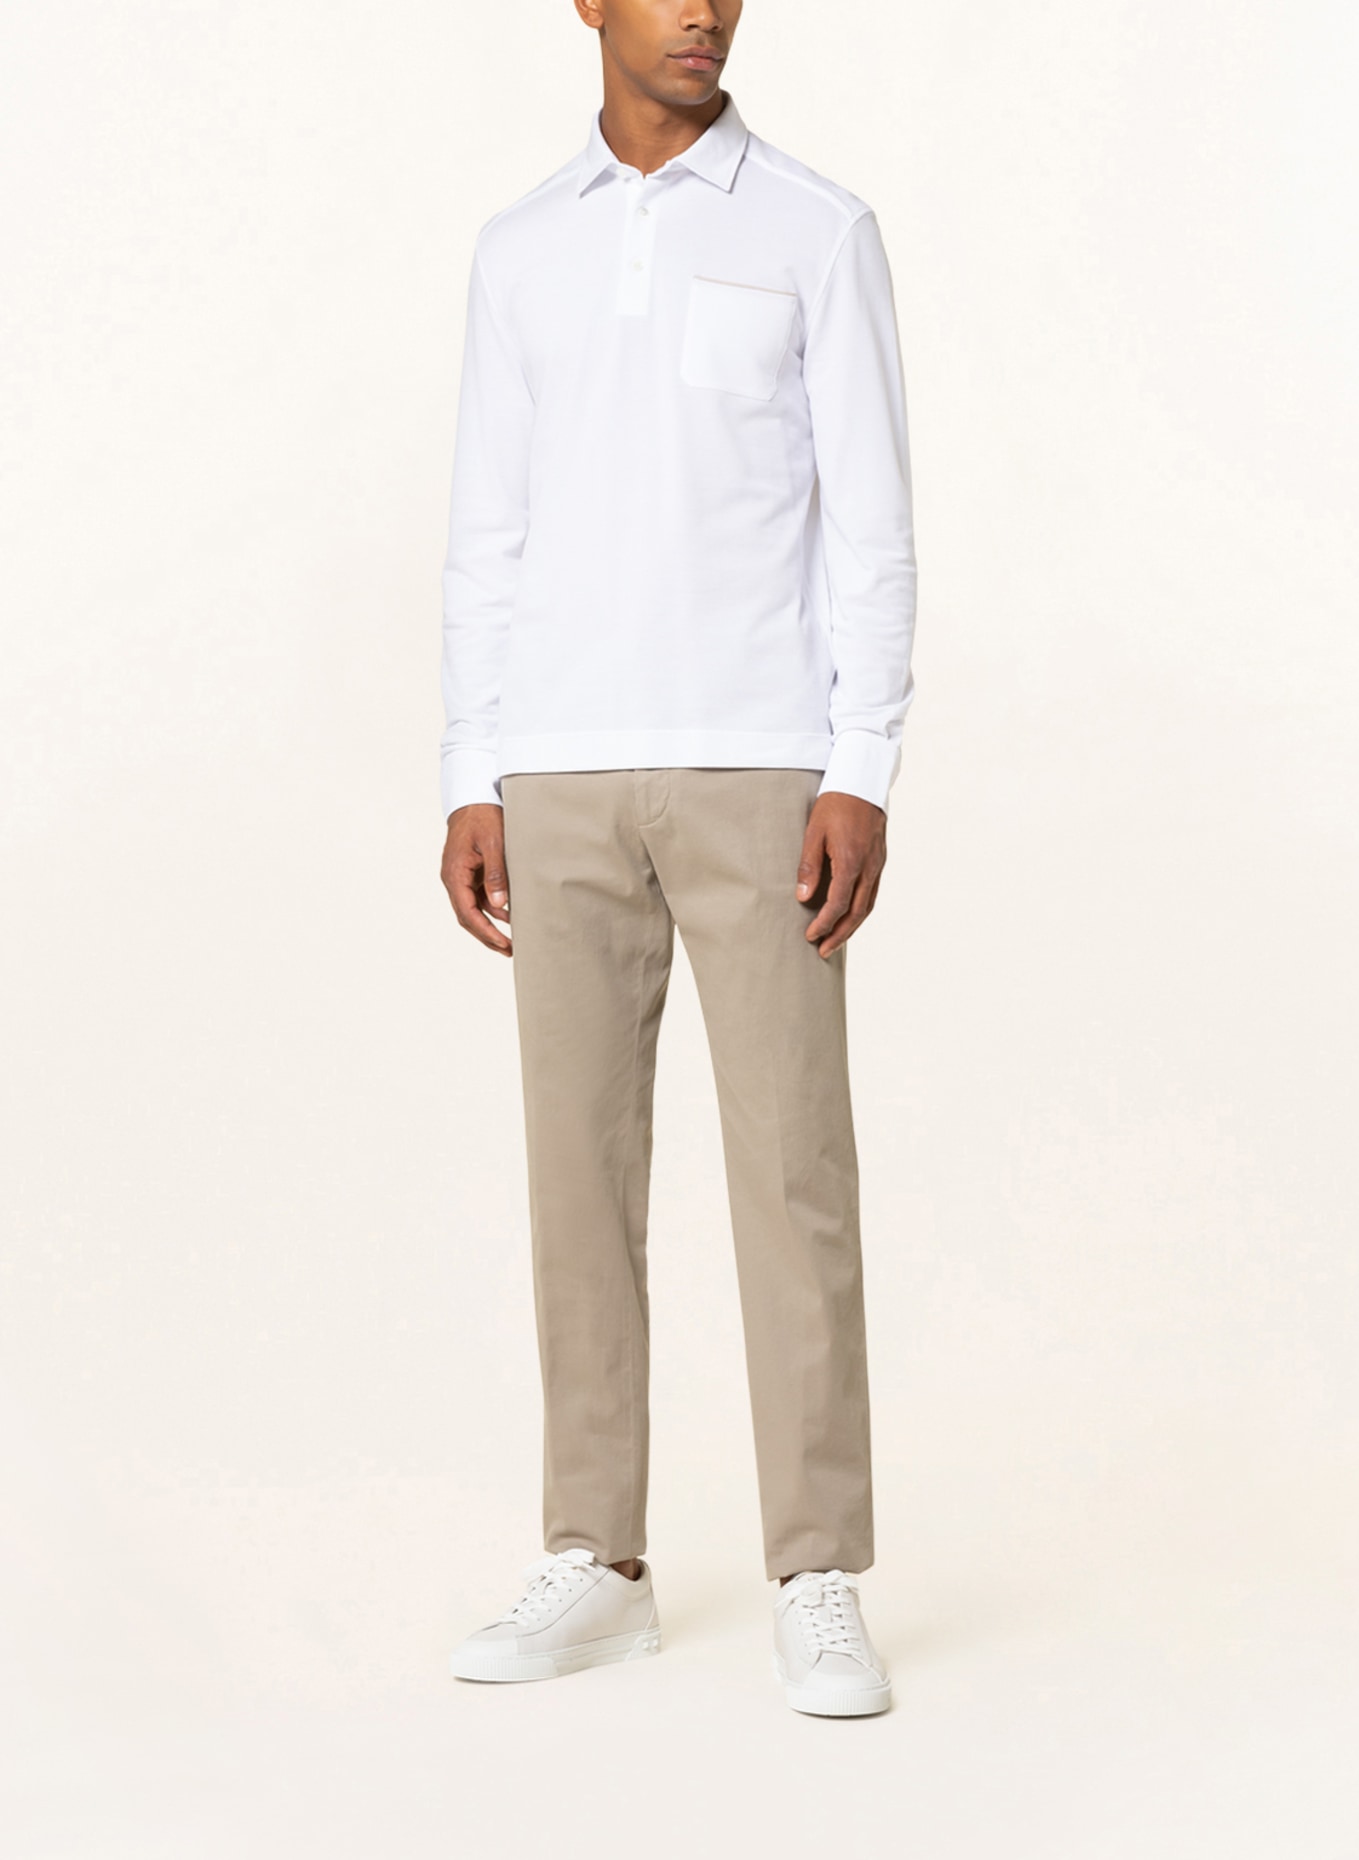 ZEGNA Piqué polo shirt, Color: WHITE (Image 2)